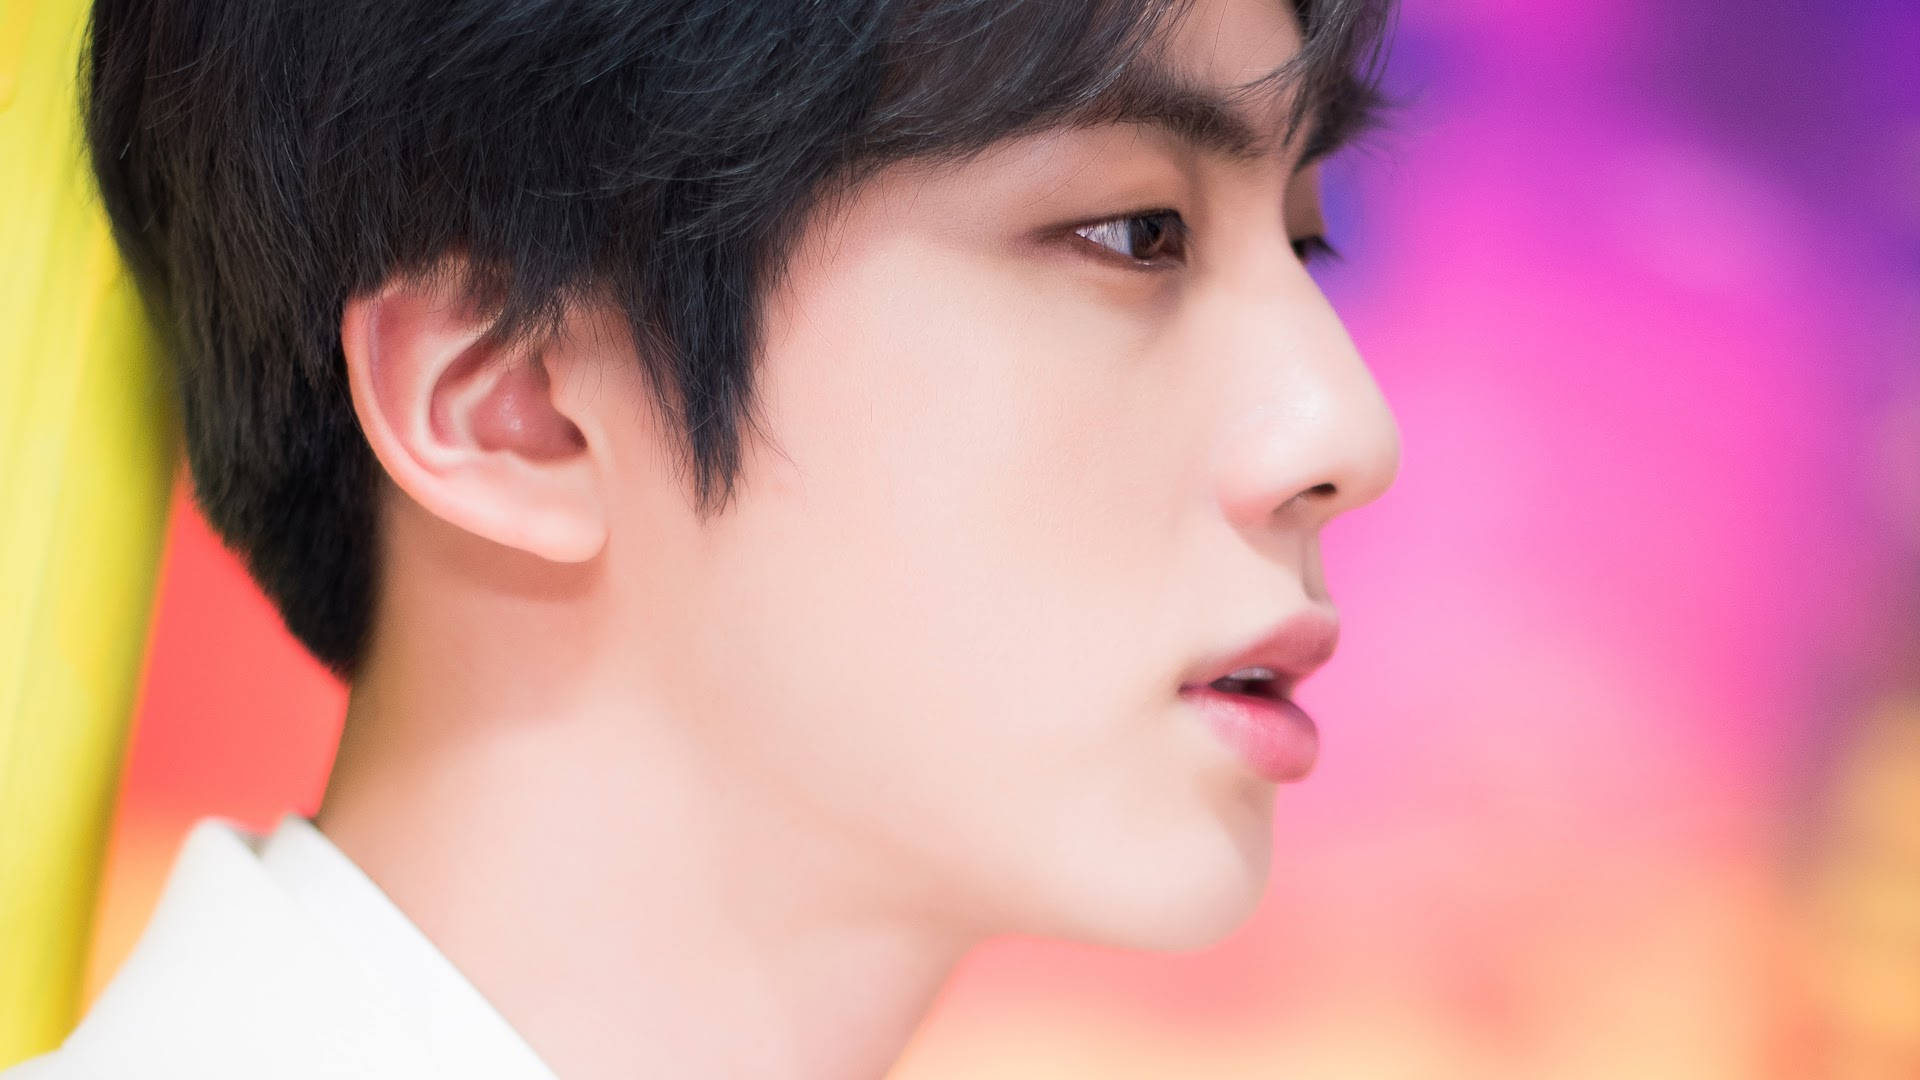 BTS Jin Side Profile Wallpaper